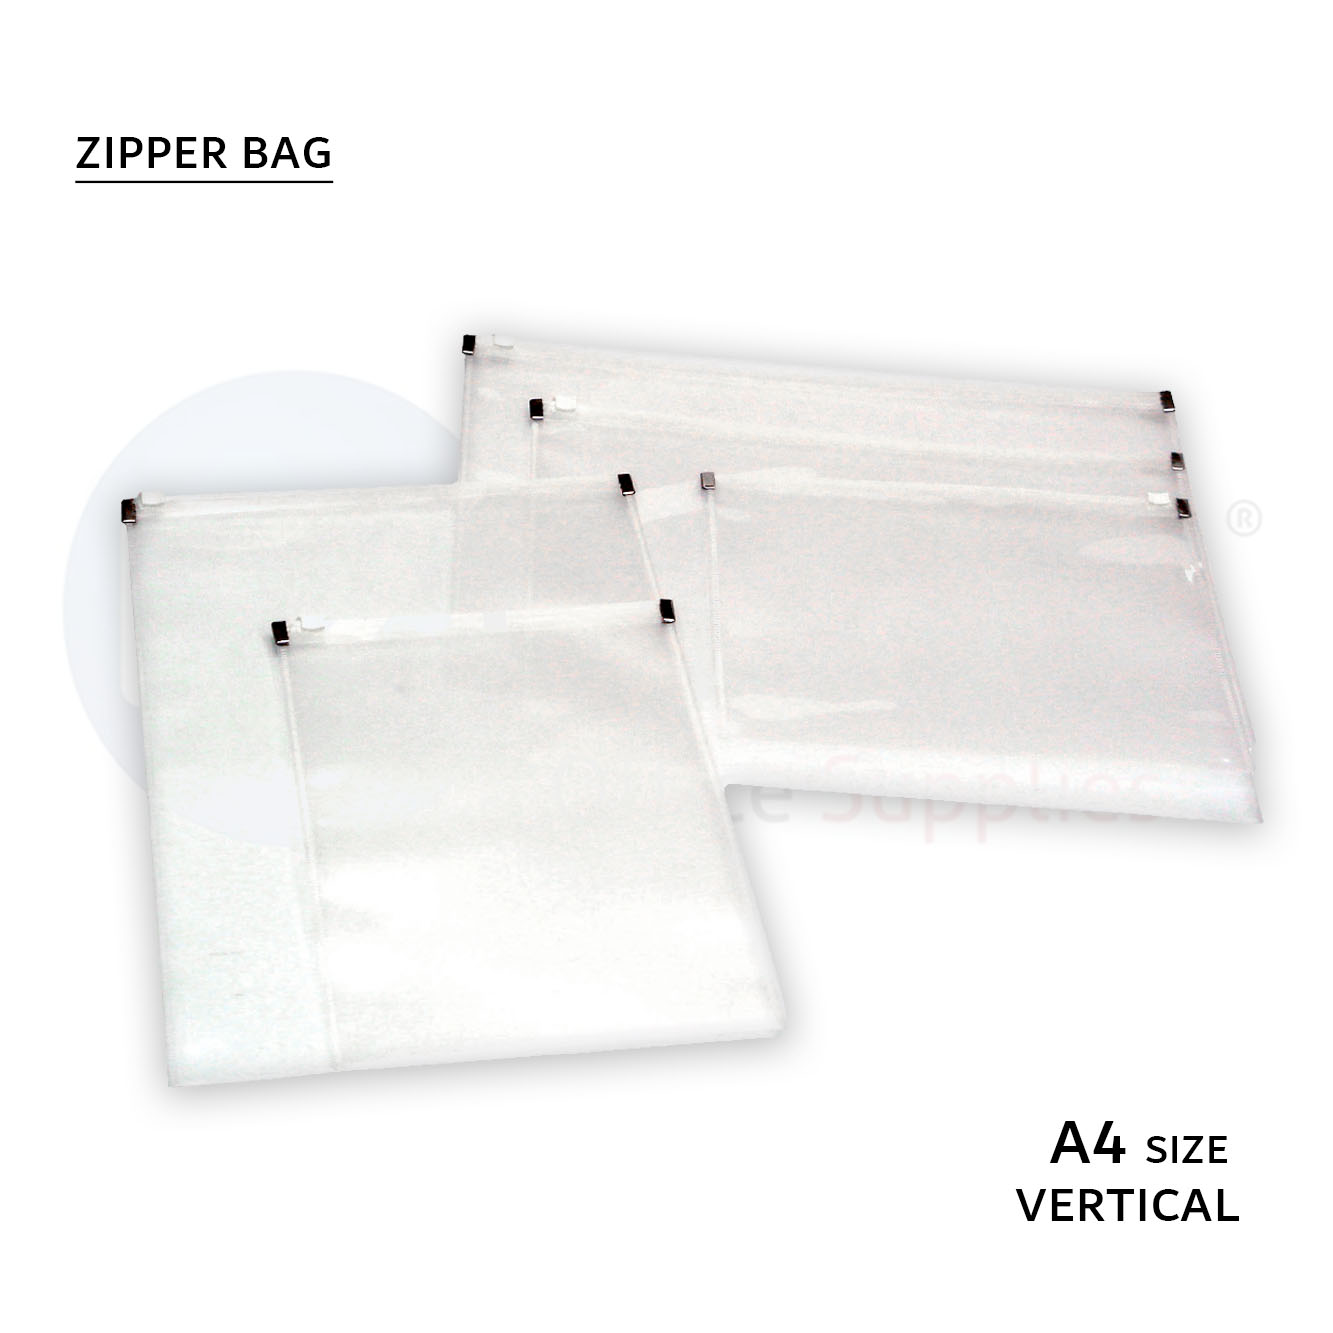 Zipper bag,verztical, A4 size